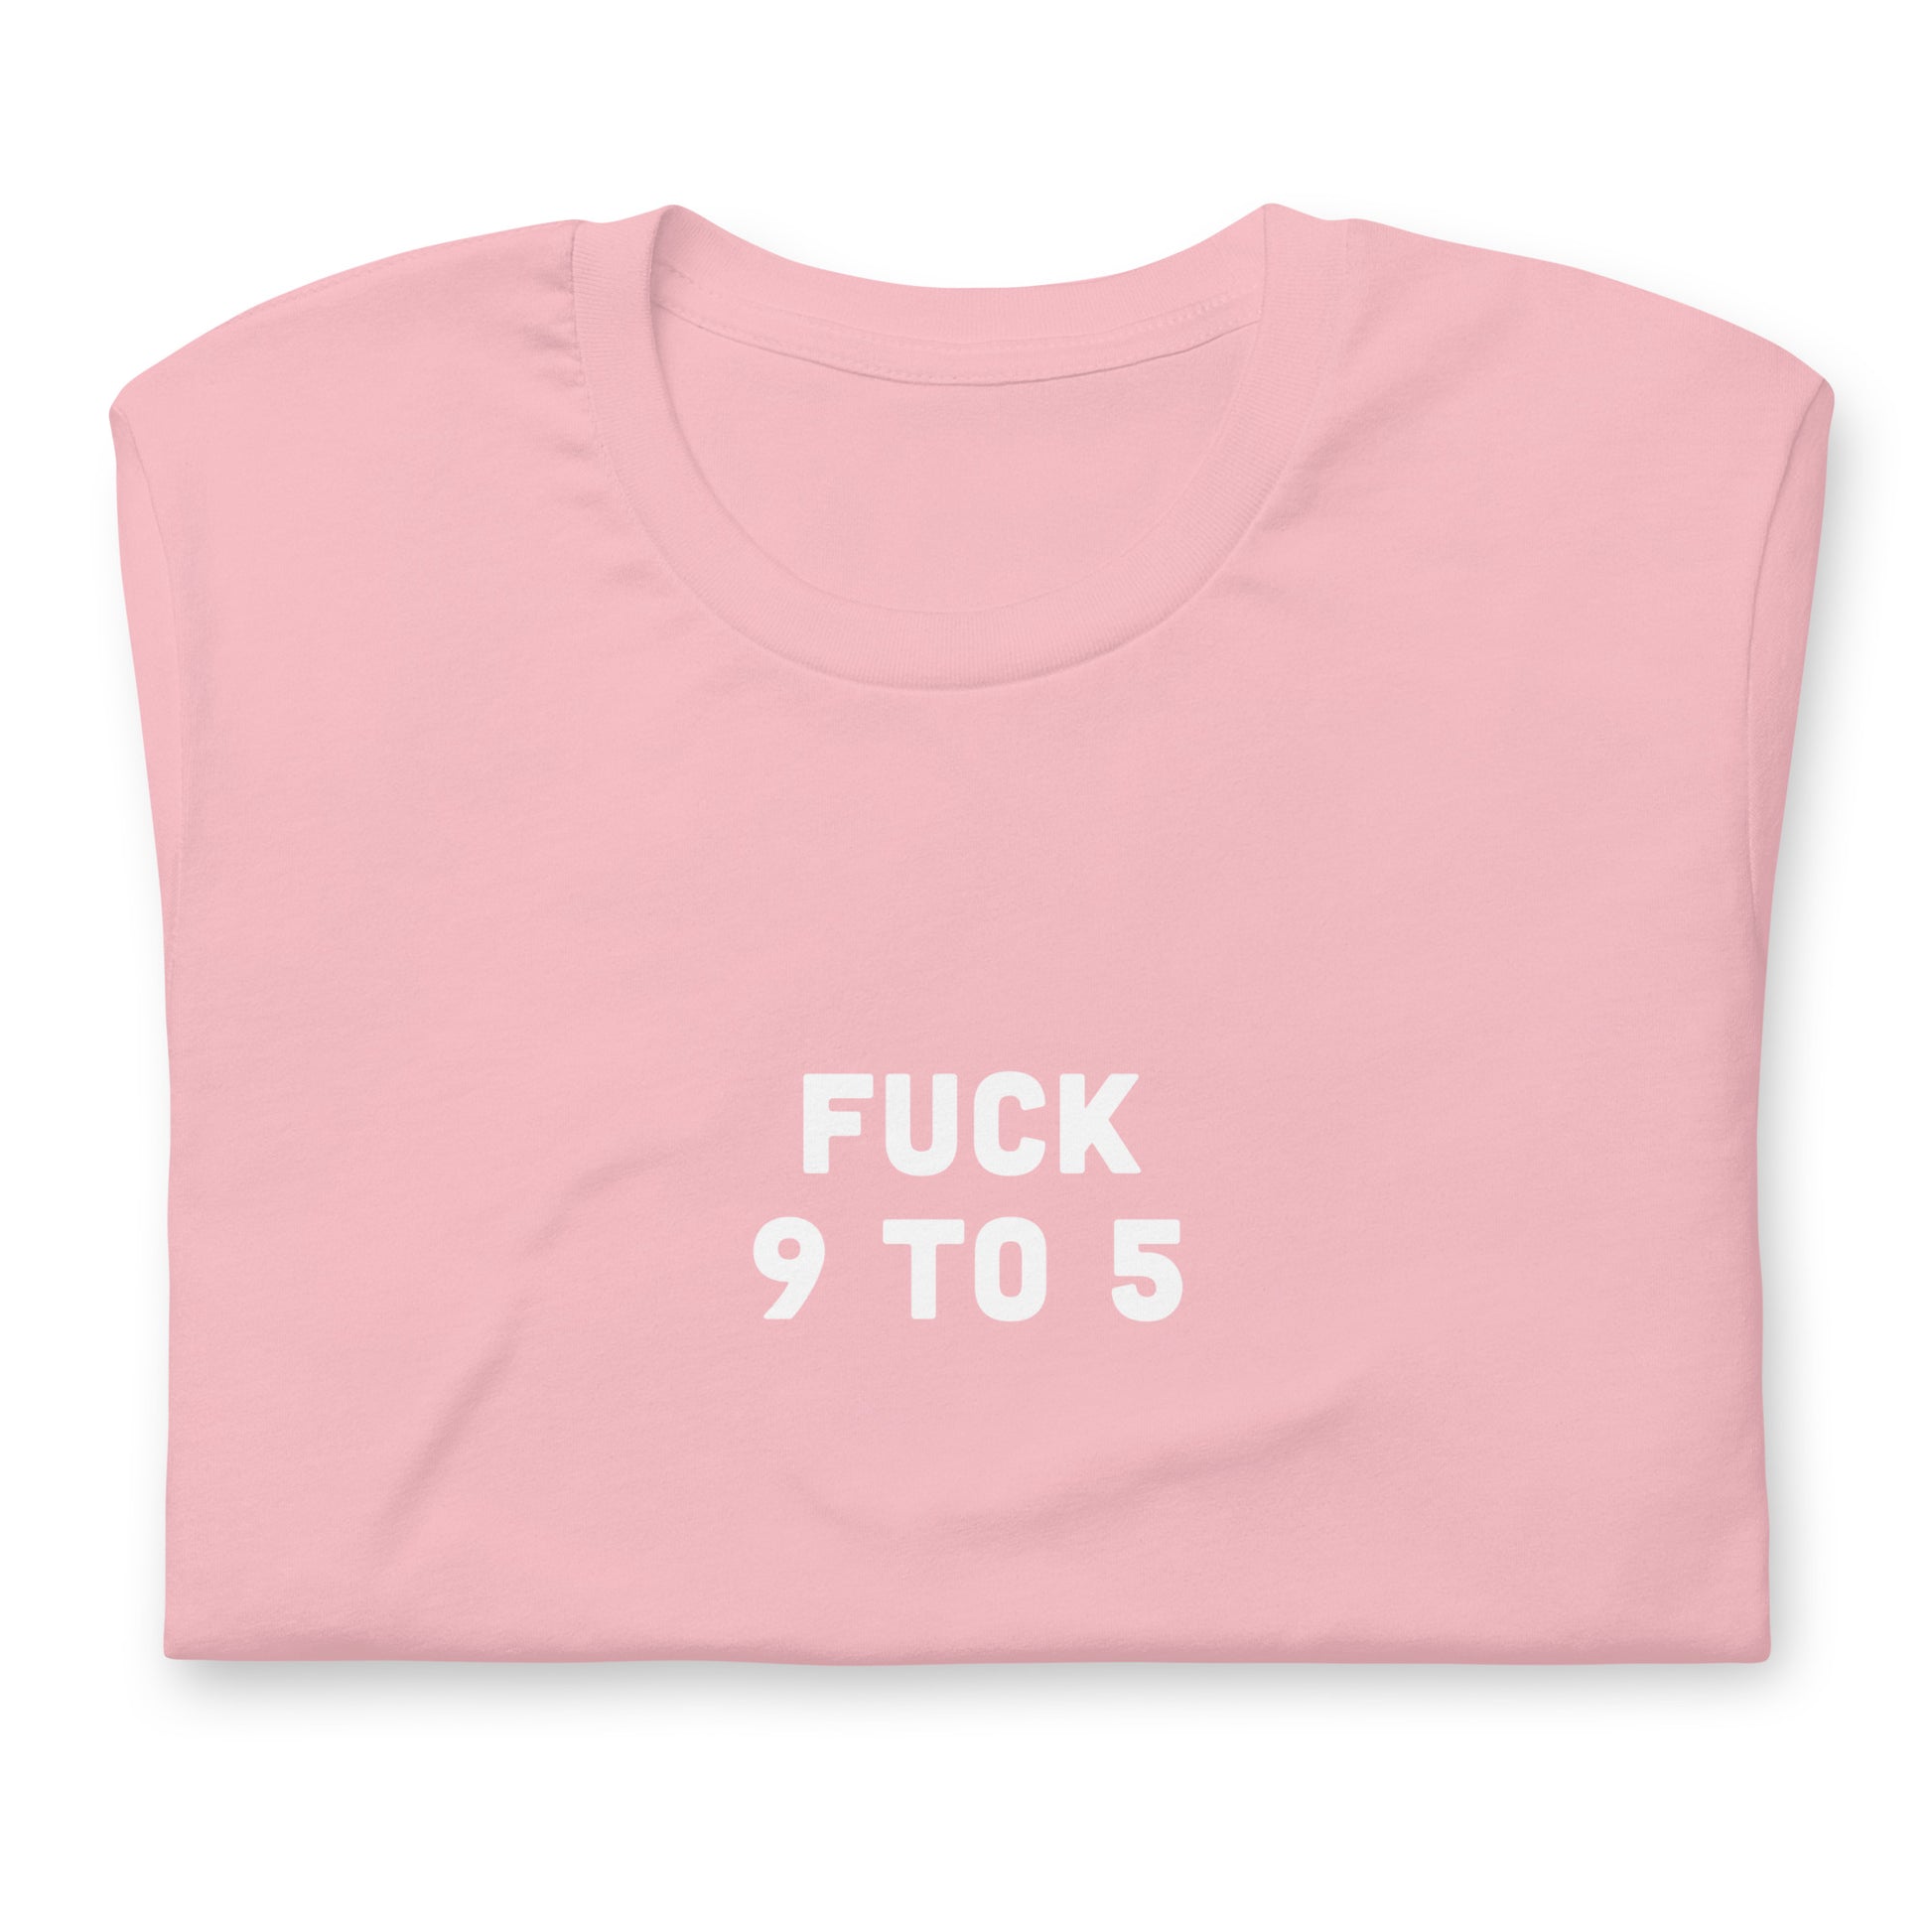 Fuck 9 To 5 T-Shirt Size S Color Asphalt